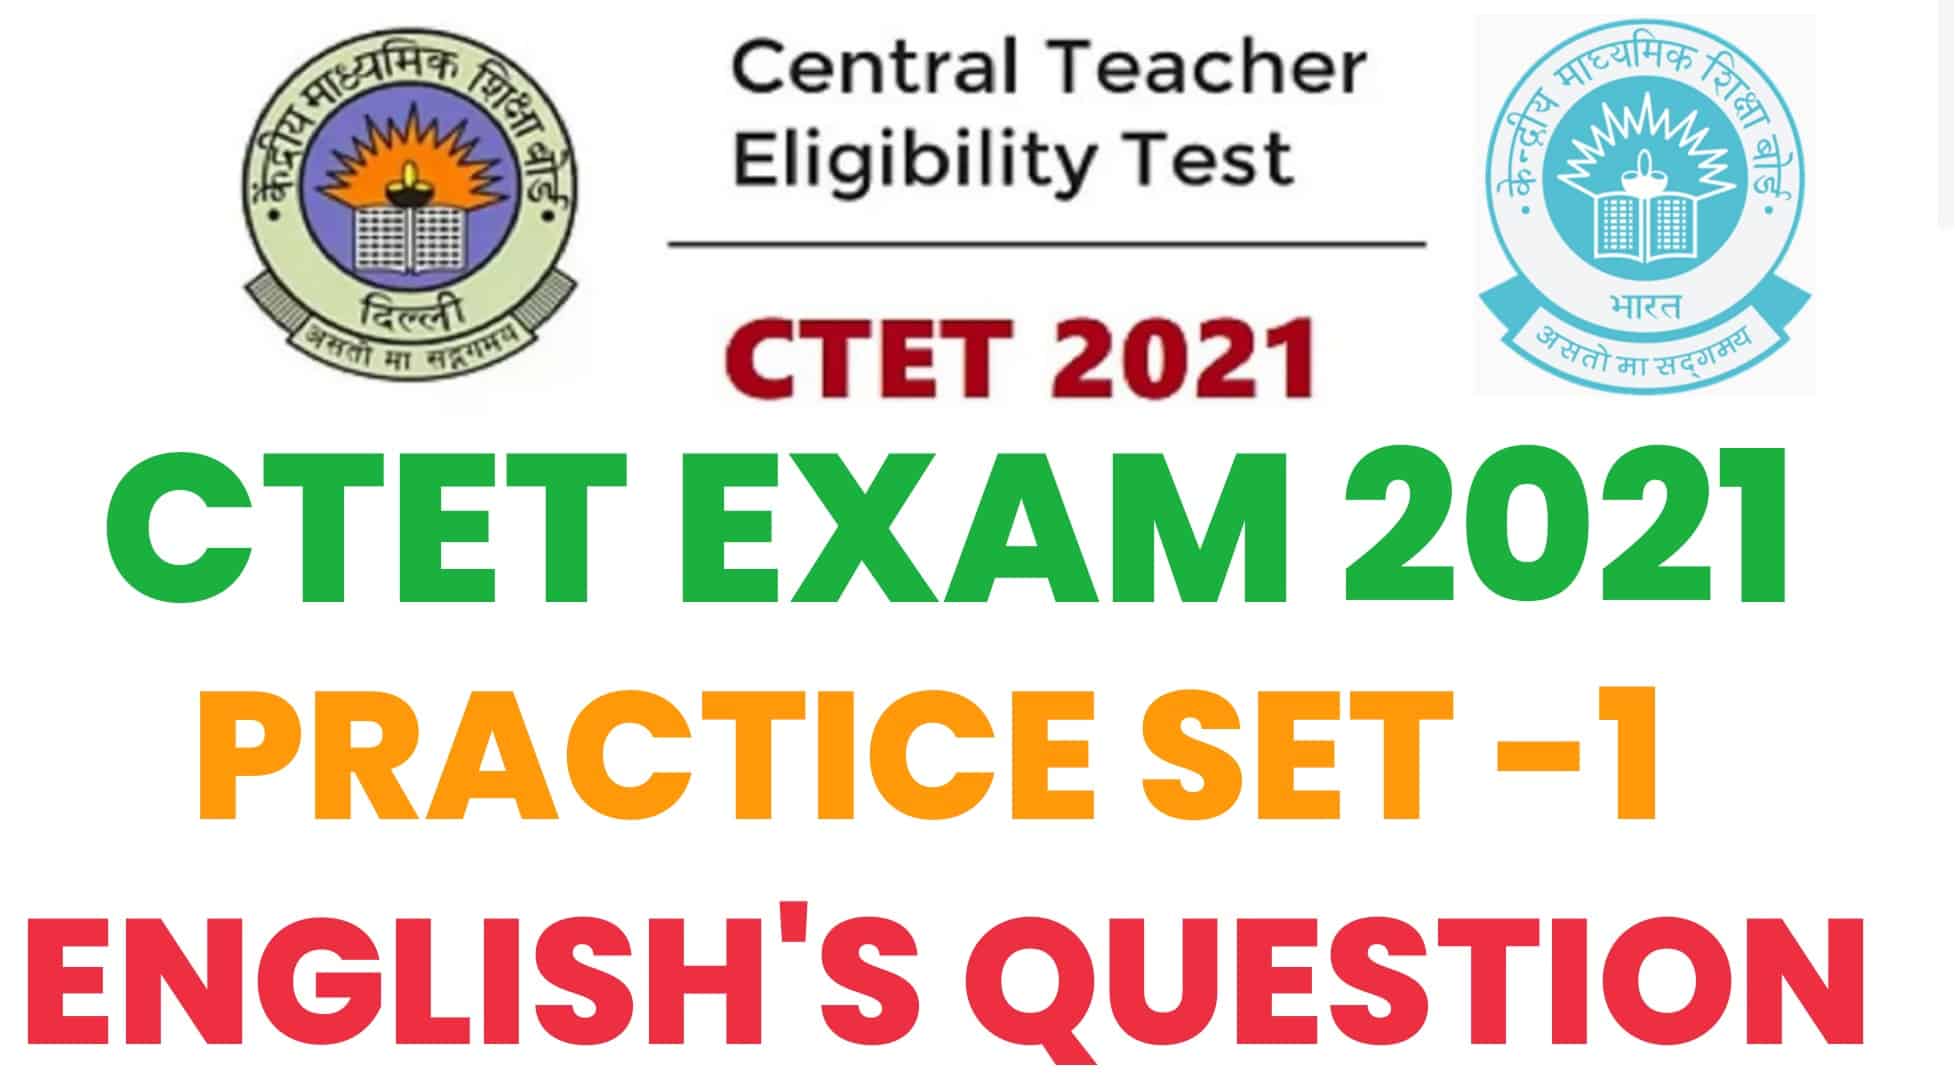 CTET/UPTET अंग्रेजी प्रैक्टिस सेट : विगत वर्षों में पूछे गये इन प्रश्नों का कर लें अध्ययन